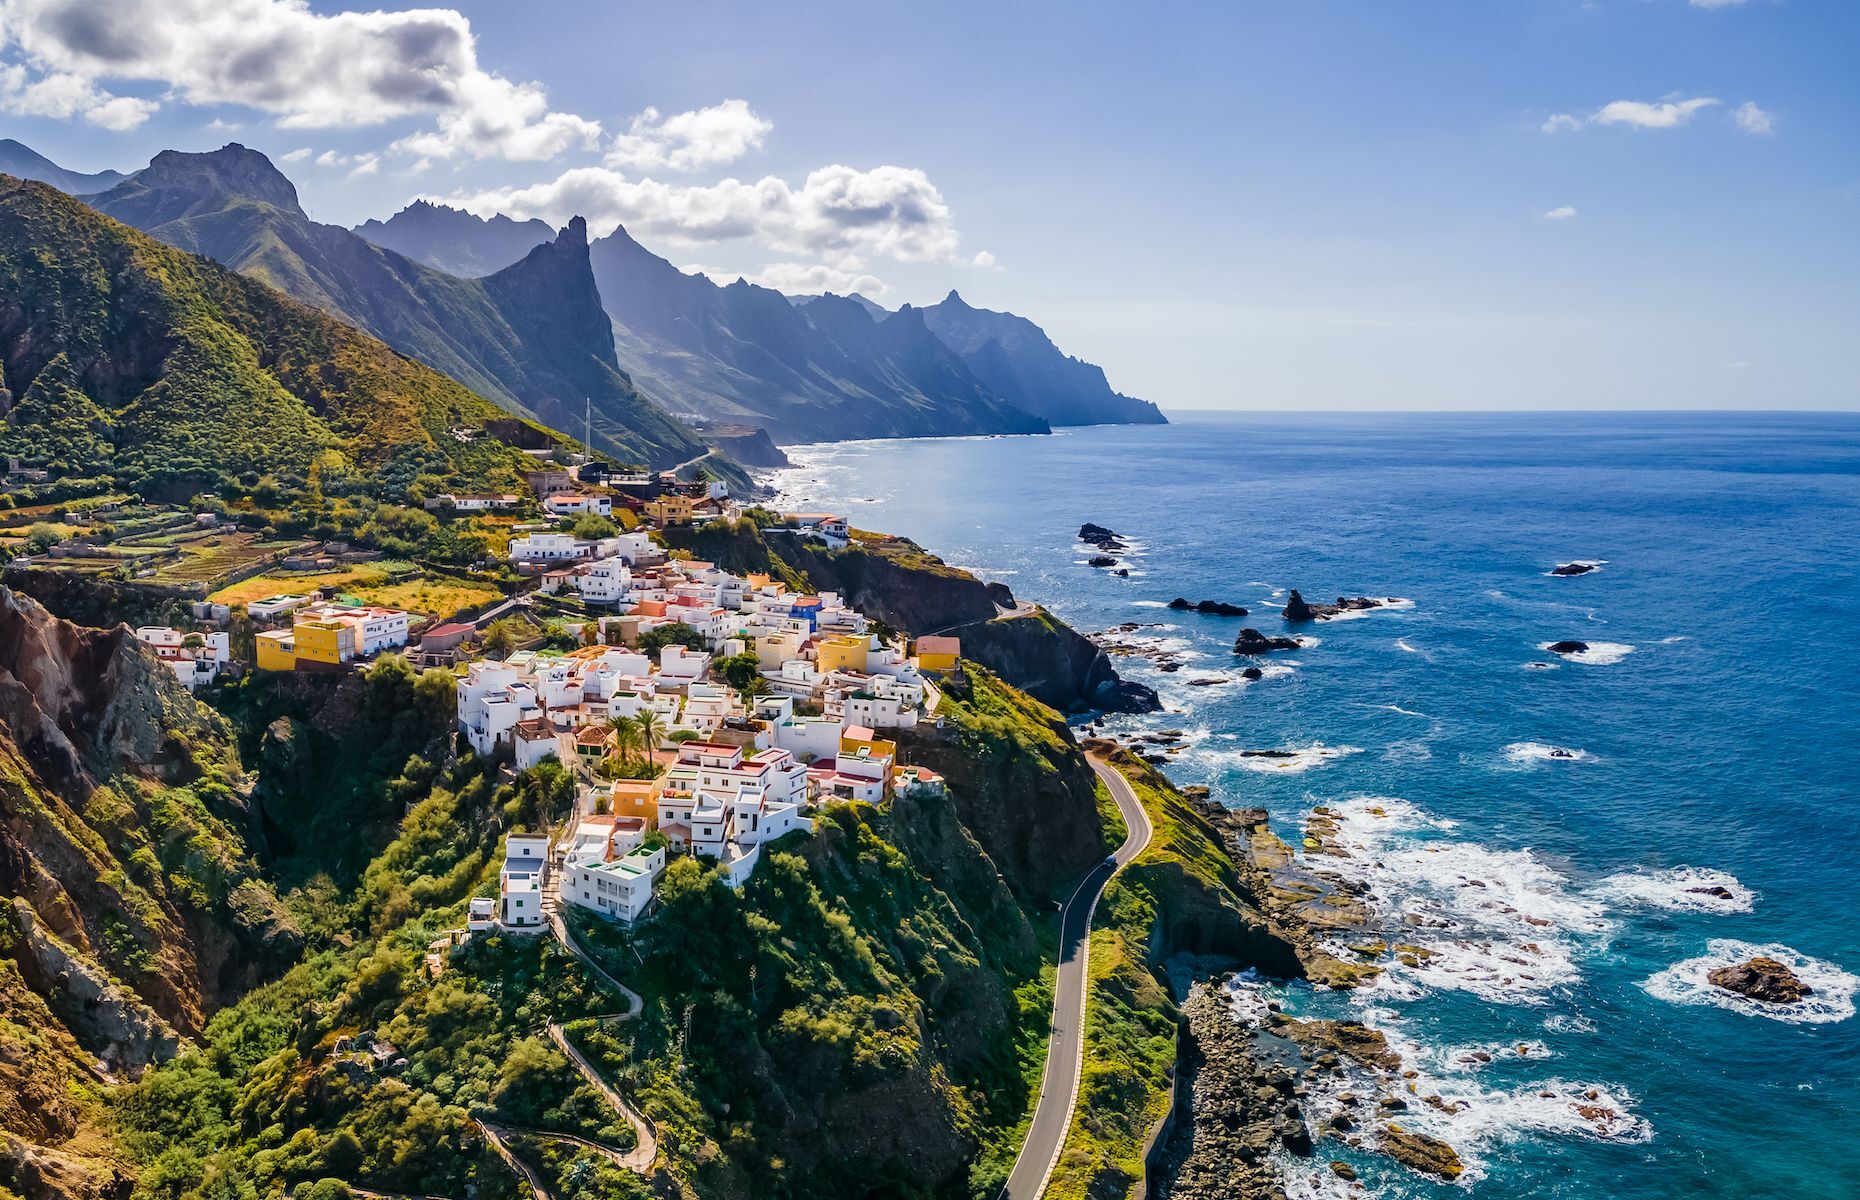 <p>Joyau de l’archipel des Canaries, <a href="https://www.hellocanaryislands.com/tenerife/">Tenerife</a> est la plus grande de ses îles, située au large de l’Afrique de l’Ouest. Au-delà de ses charmants villages et de ses paysages bucoliques, Tenerife abrite aussi l’imposant <a href="https://www.spain.info/fr/nature/parc-national-teide/">volcan Teide</a>, considéré comme étant le plus haut sommet d’Espagne. Vous pourrez également prendre part aux festivités du Carnaval de Santa Cruz si vous prévoyez vous y rendre avant le carême.</p>